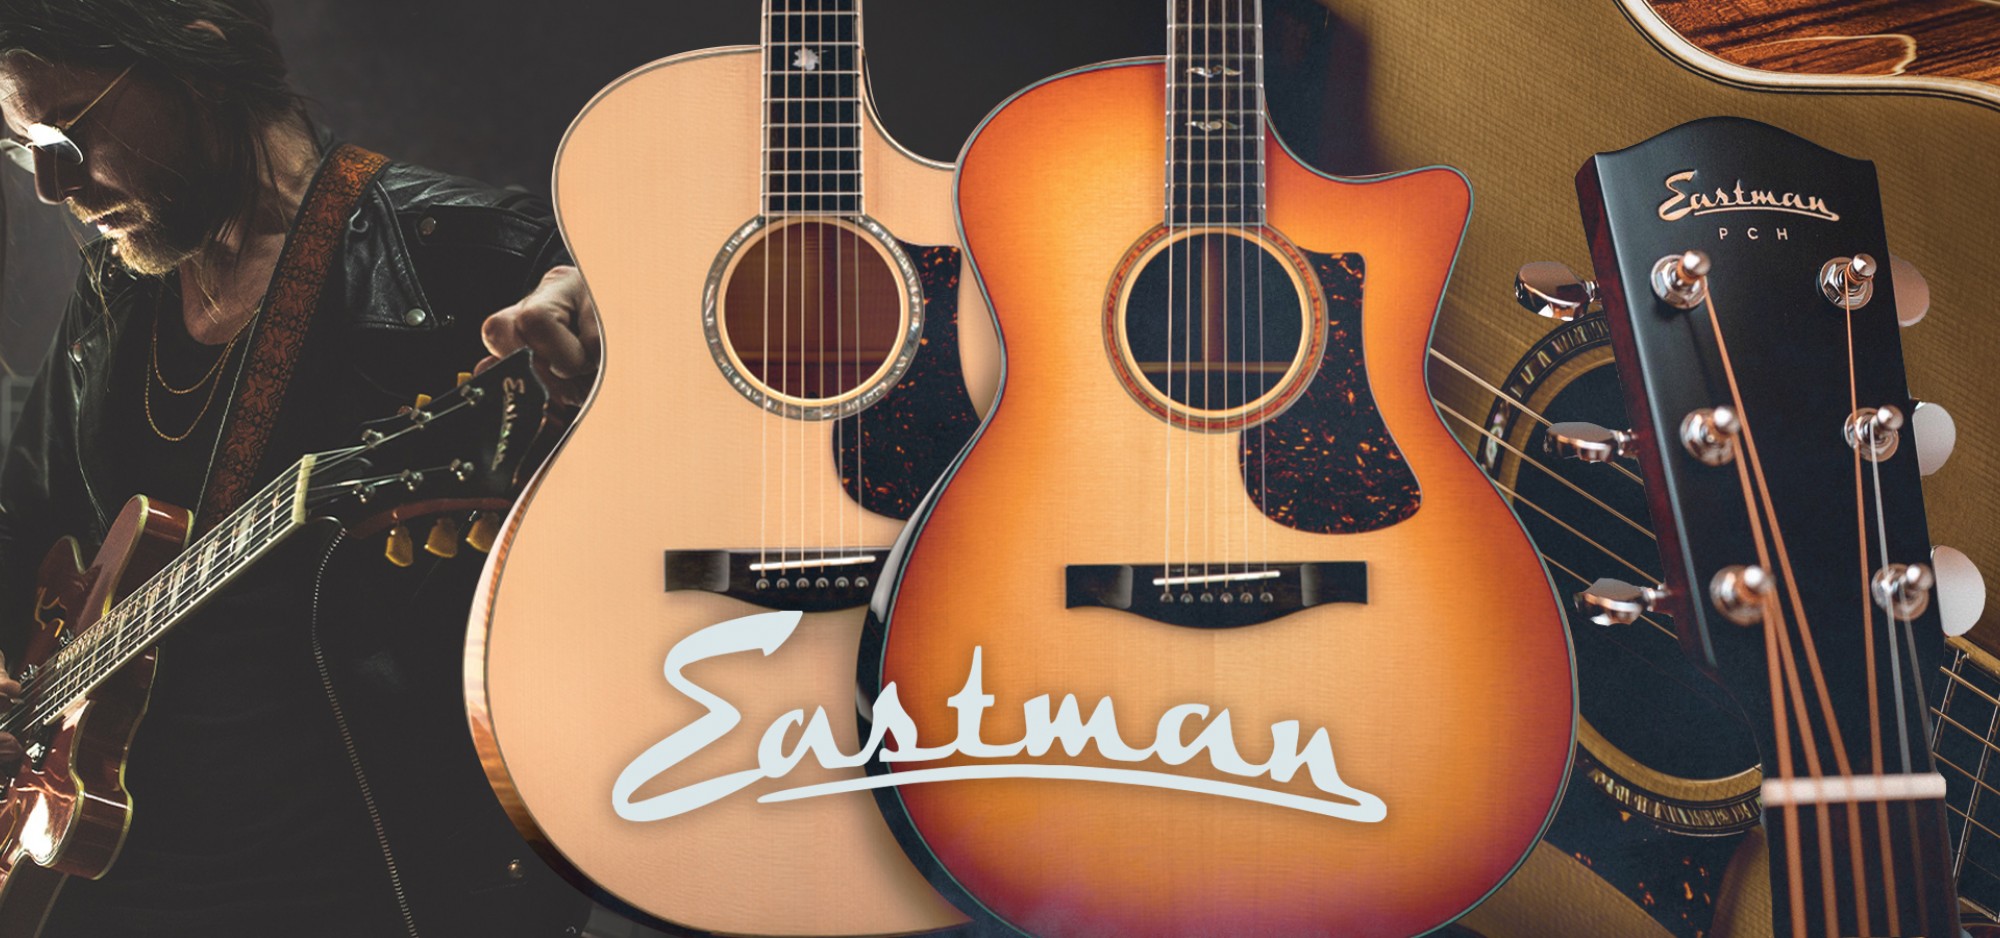 Eastman吉他